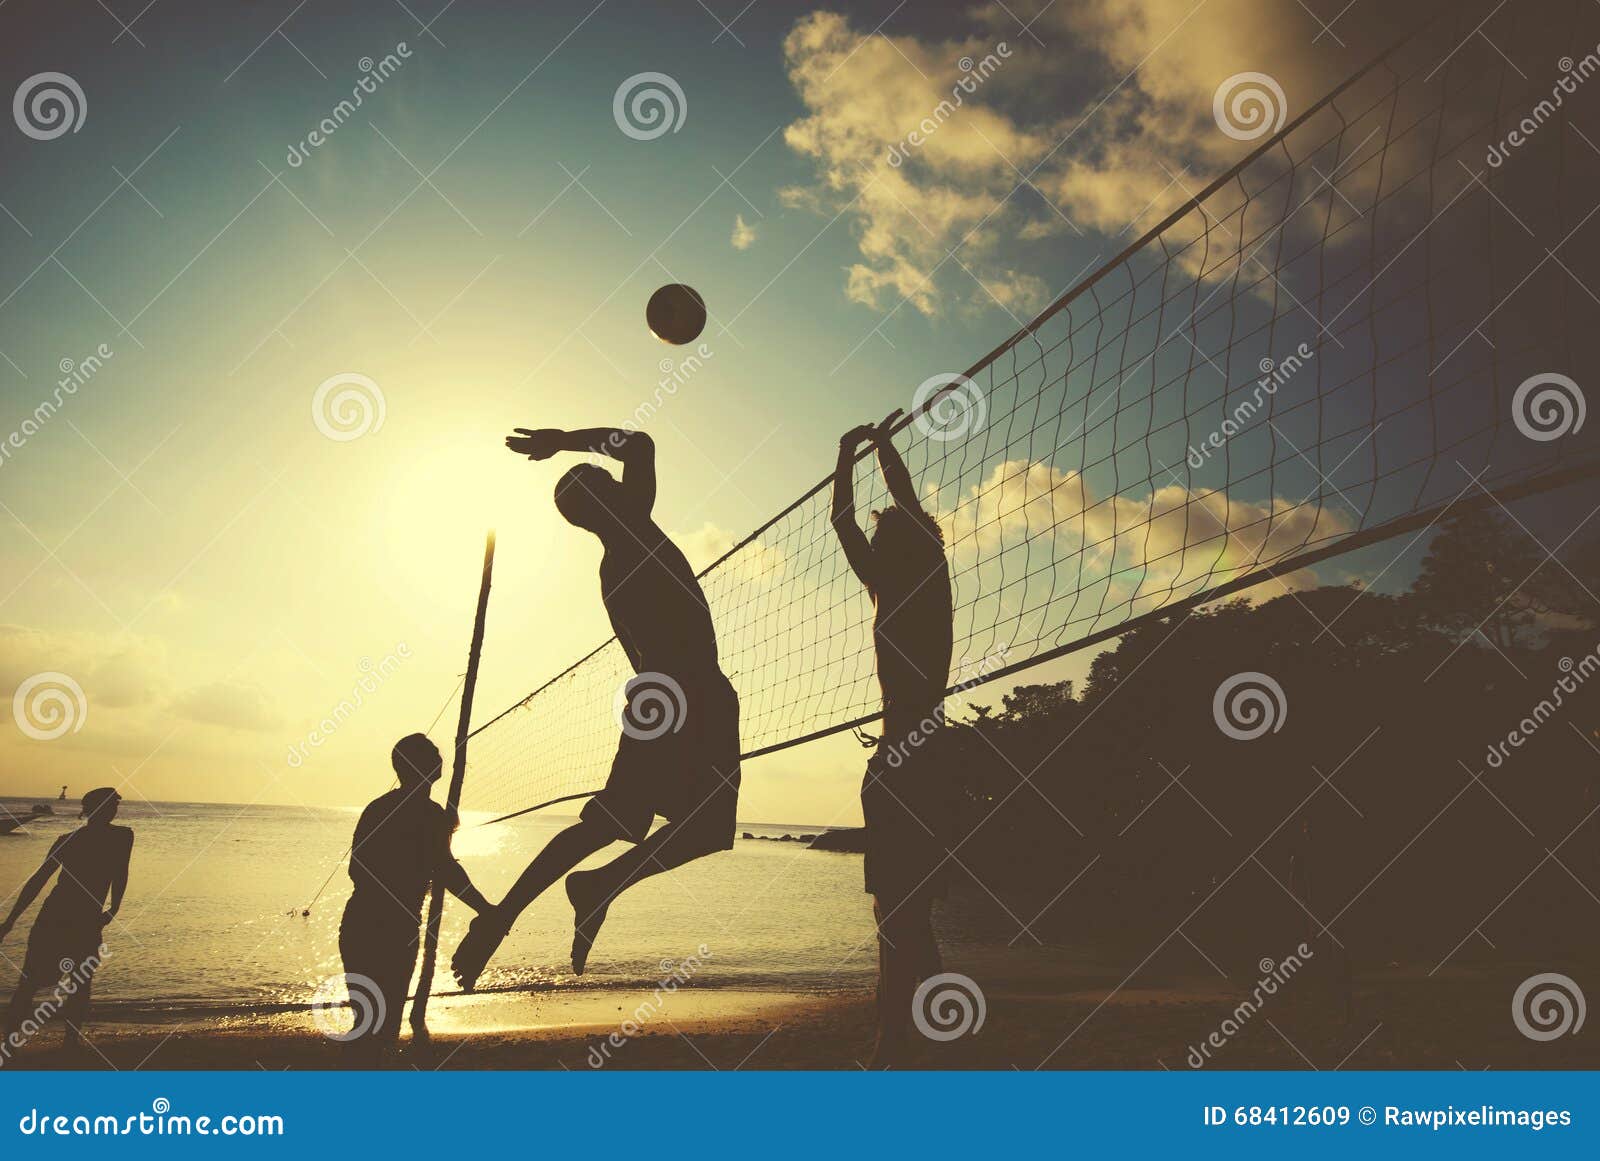 Beach Volleyball at Sunset Enjoyment Concept.